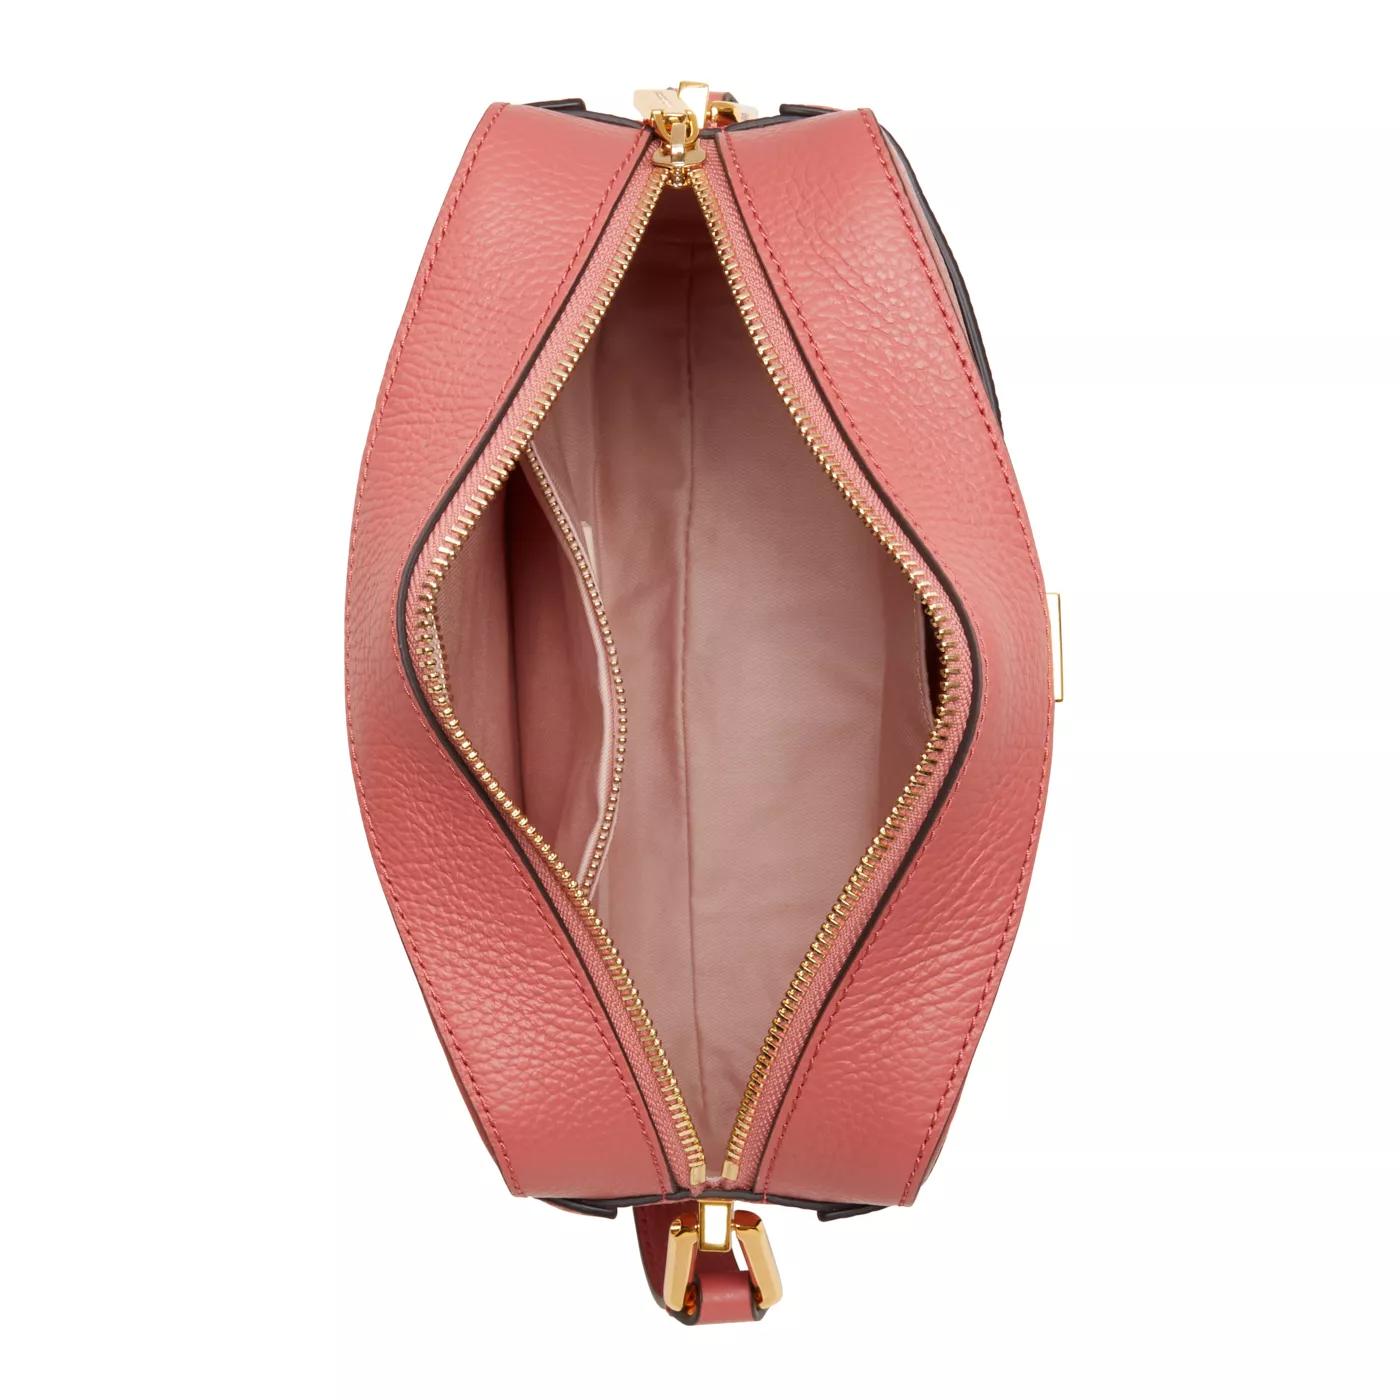 Coccinelle Crossbody bags Liya Rosa Leder Umhängetasche E1MD01501 in poeder roze